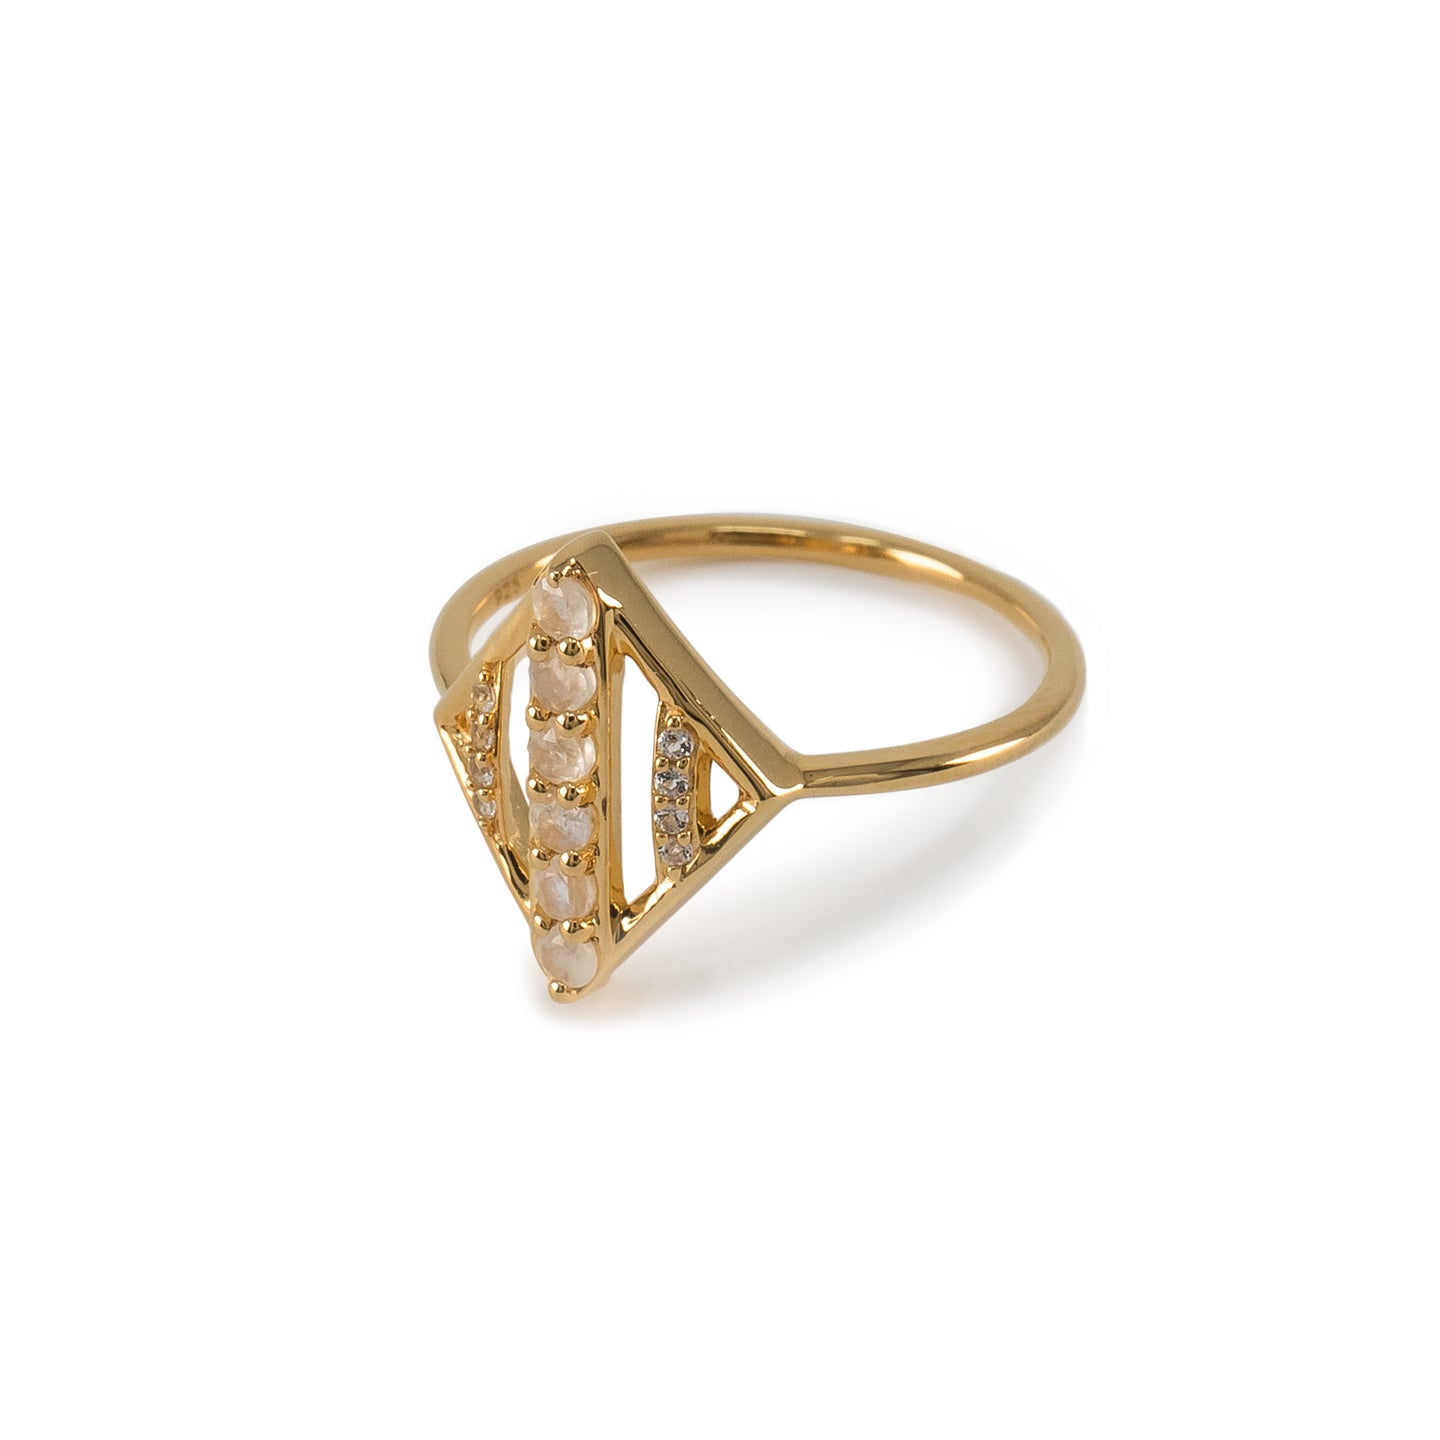 Moonstone Rhombus Ring in 14K Gold Vermeil